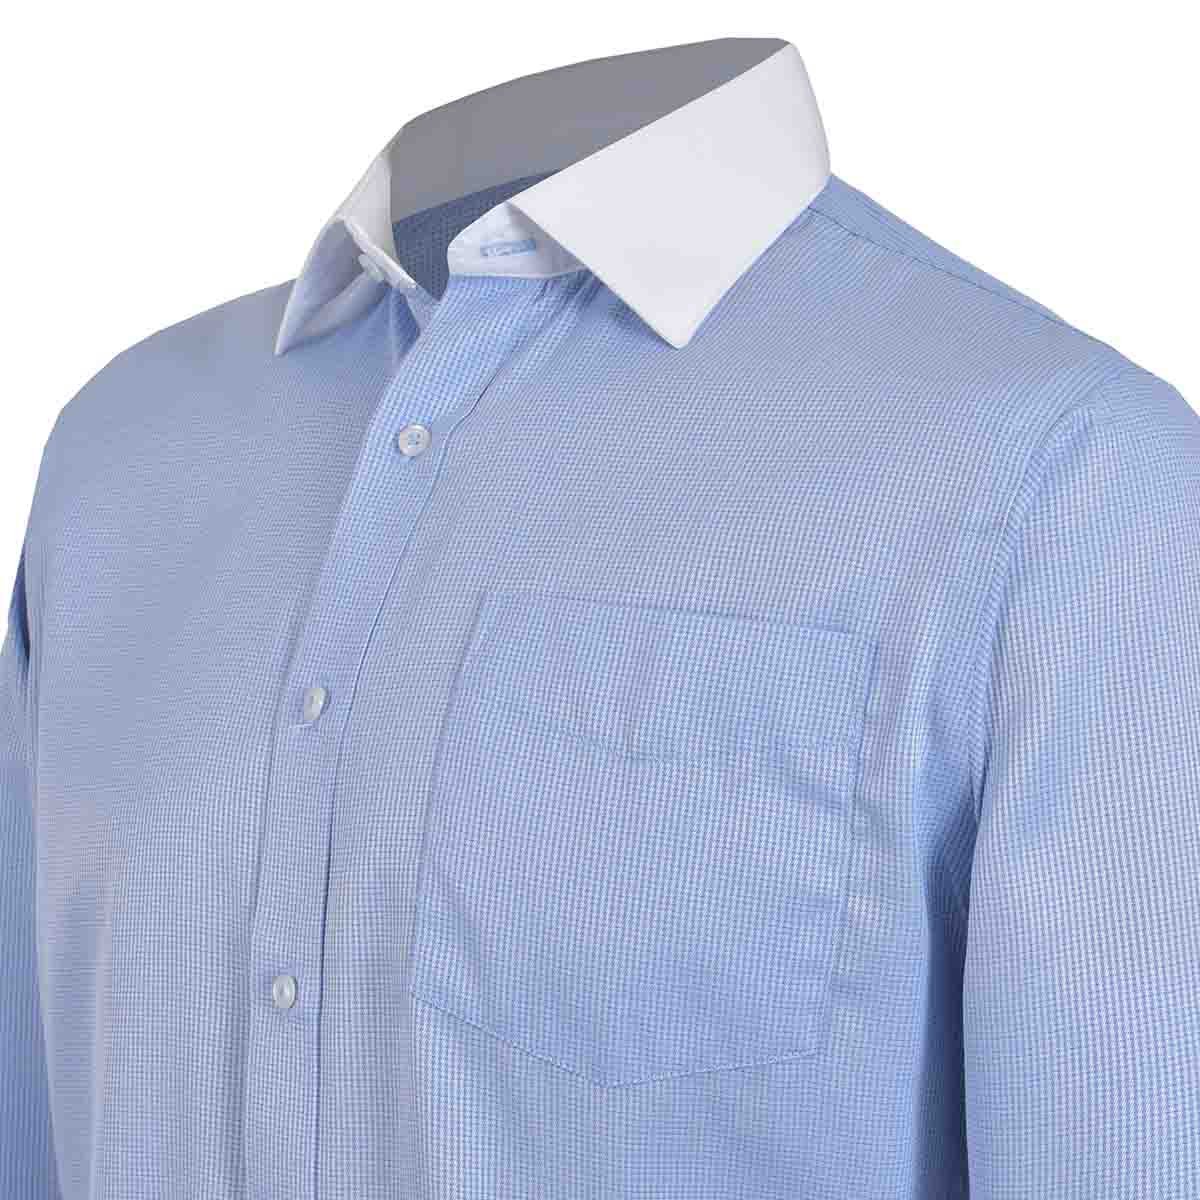 Camisa de Vestir Slim Fit Color Azul Combinado Nina Ricci para Caballero